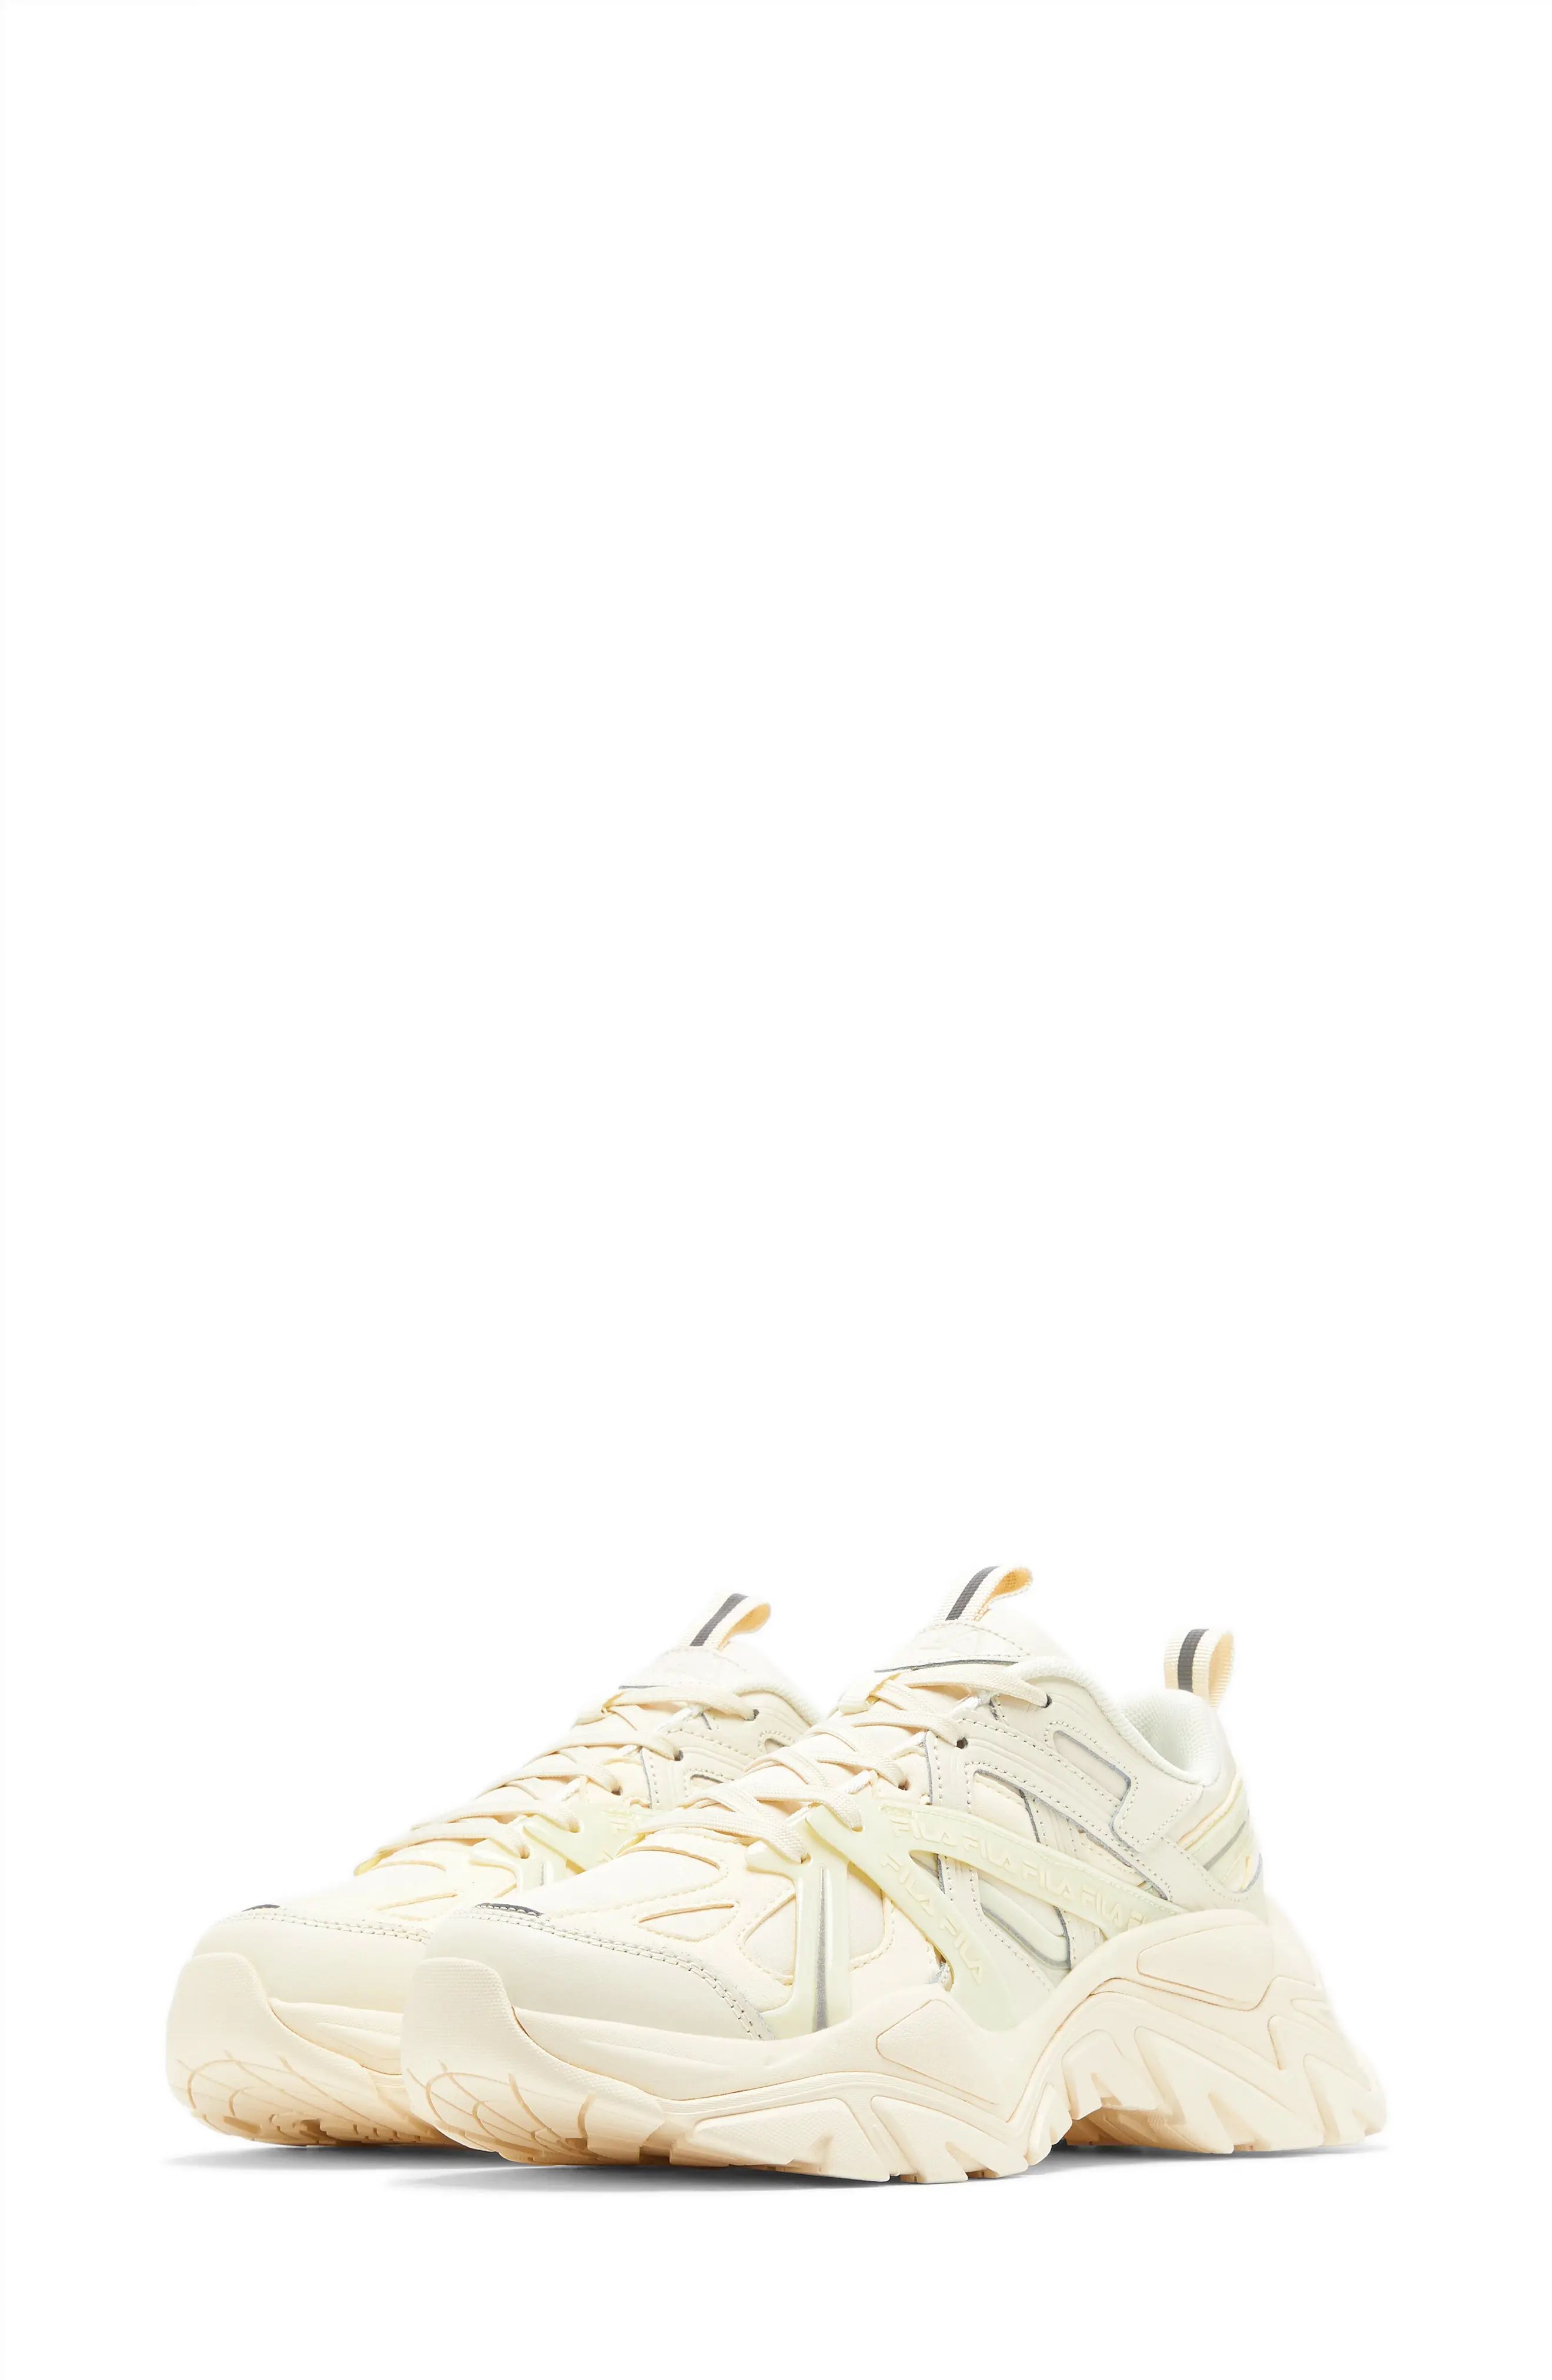 FILA Electrove Chunky Sneaker in White /White /White at Nordstrom, Size 9.5 | Nordstrom